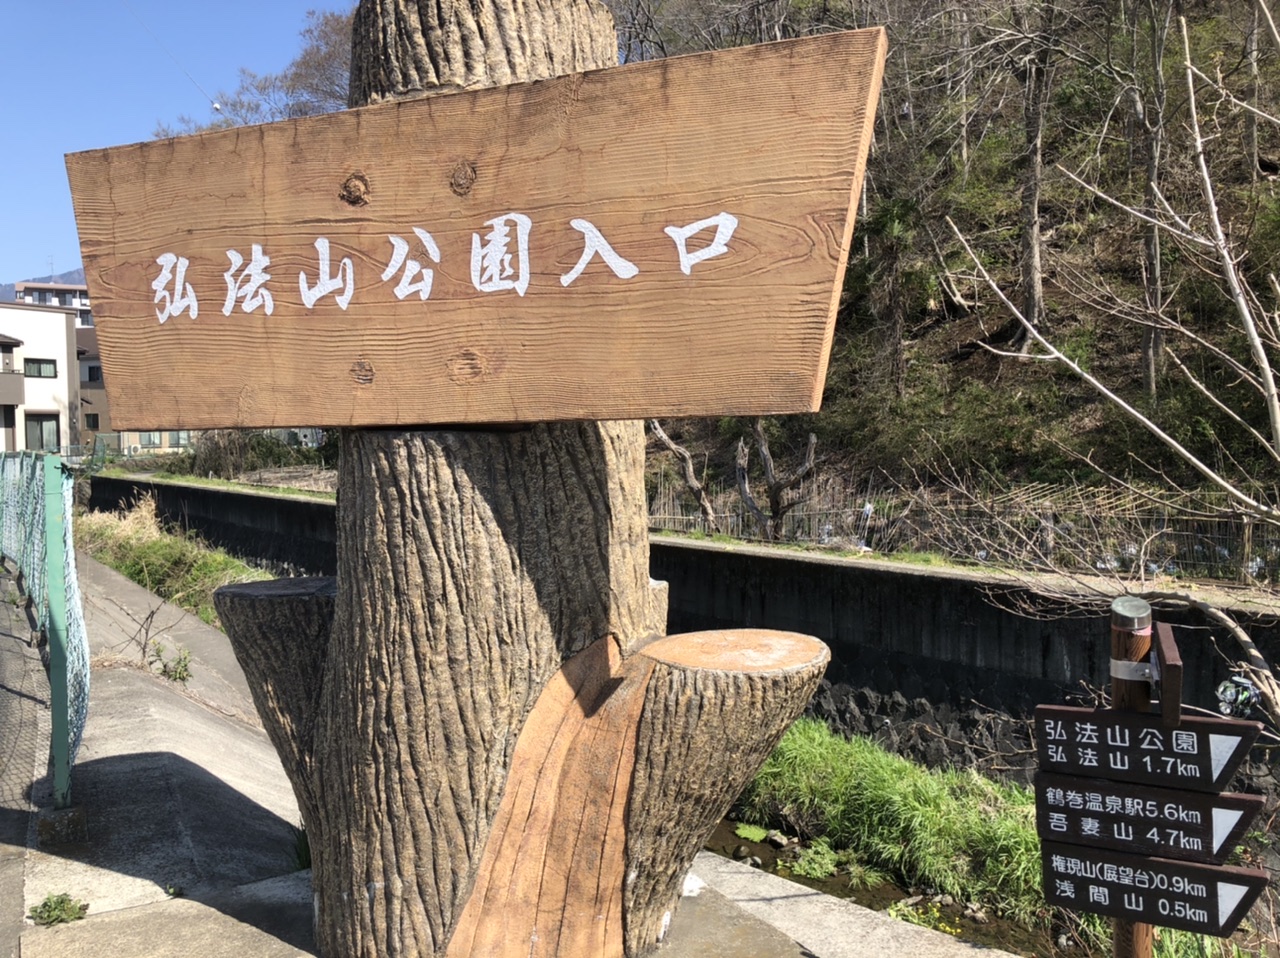 10:14
弘法山公園入口到着
ここから浅間山まで
行きまーす
さぁ！行くぞ